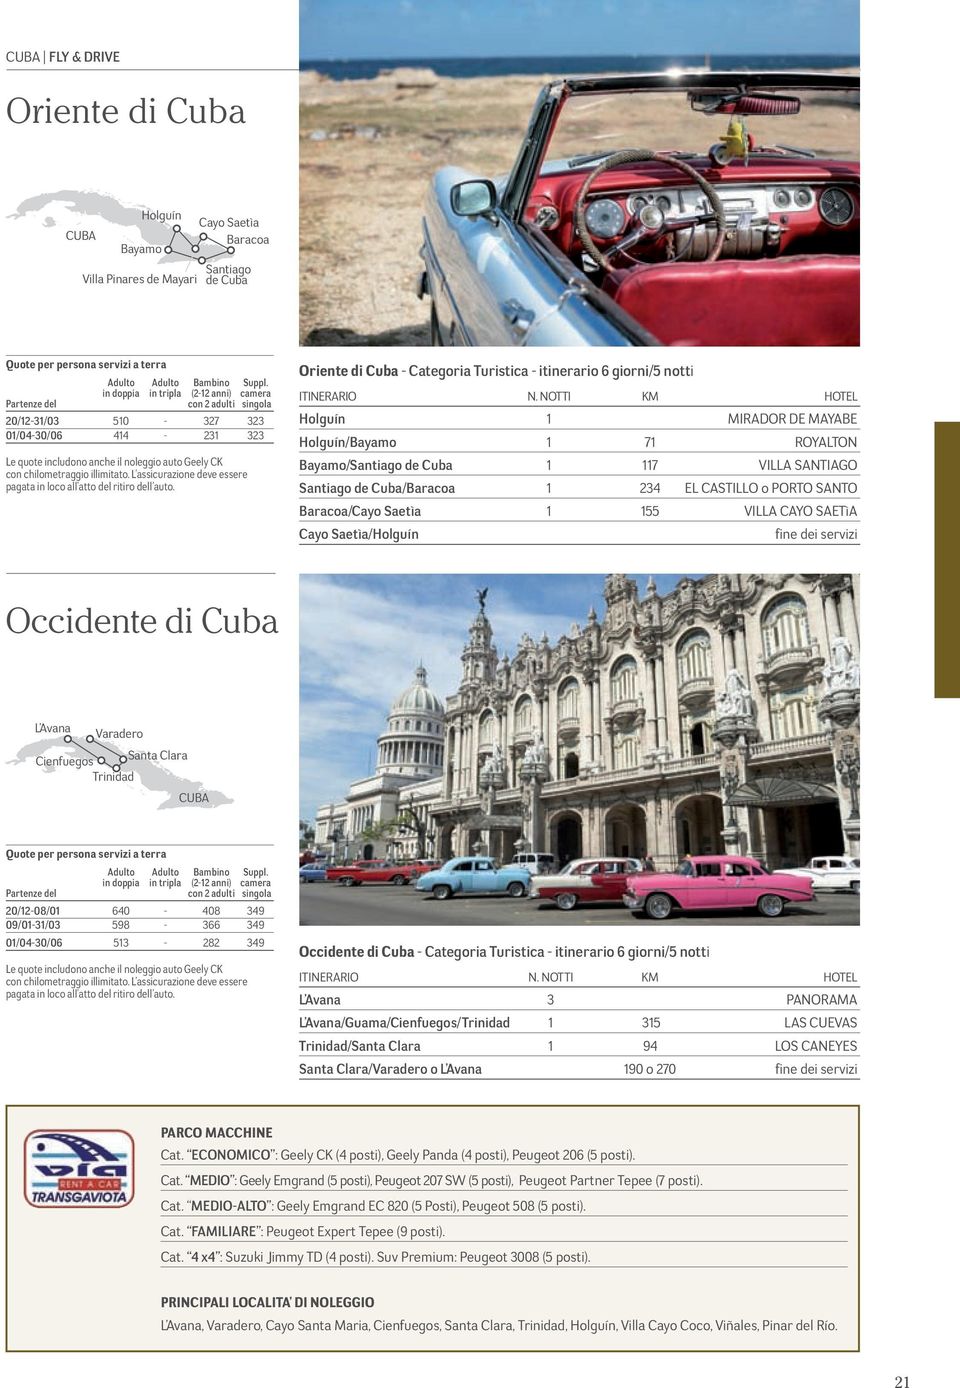 illimitato. L assicurazione deve essere pagata in loco all atto del ritiro dell auto. Oriente di Cuba - Categoria Turistica - itinerario 6 giorni/5 notti ITINERARIO N.